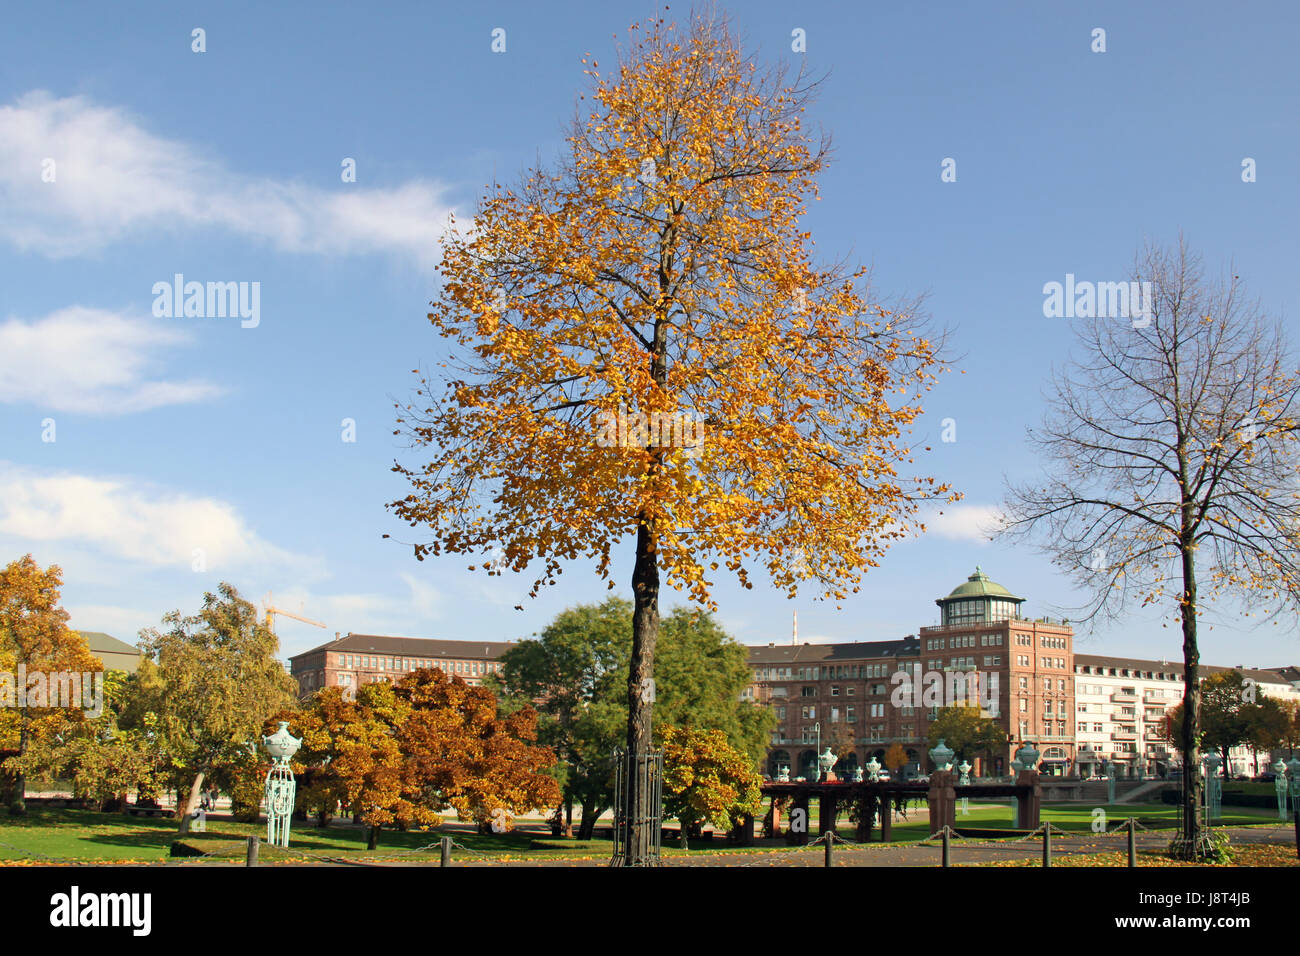 Lo jugendstil, autunno autunno, ambulacri parkway, città, fogliame autunnale Foto Stock